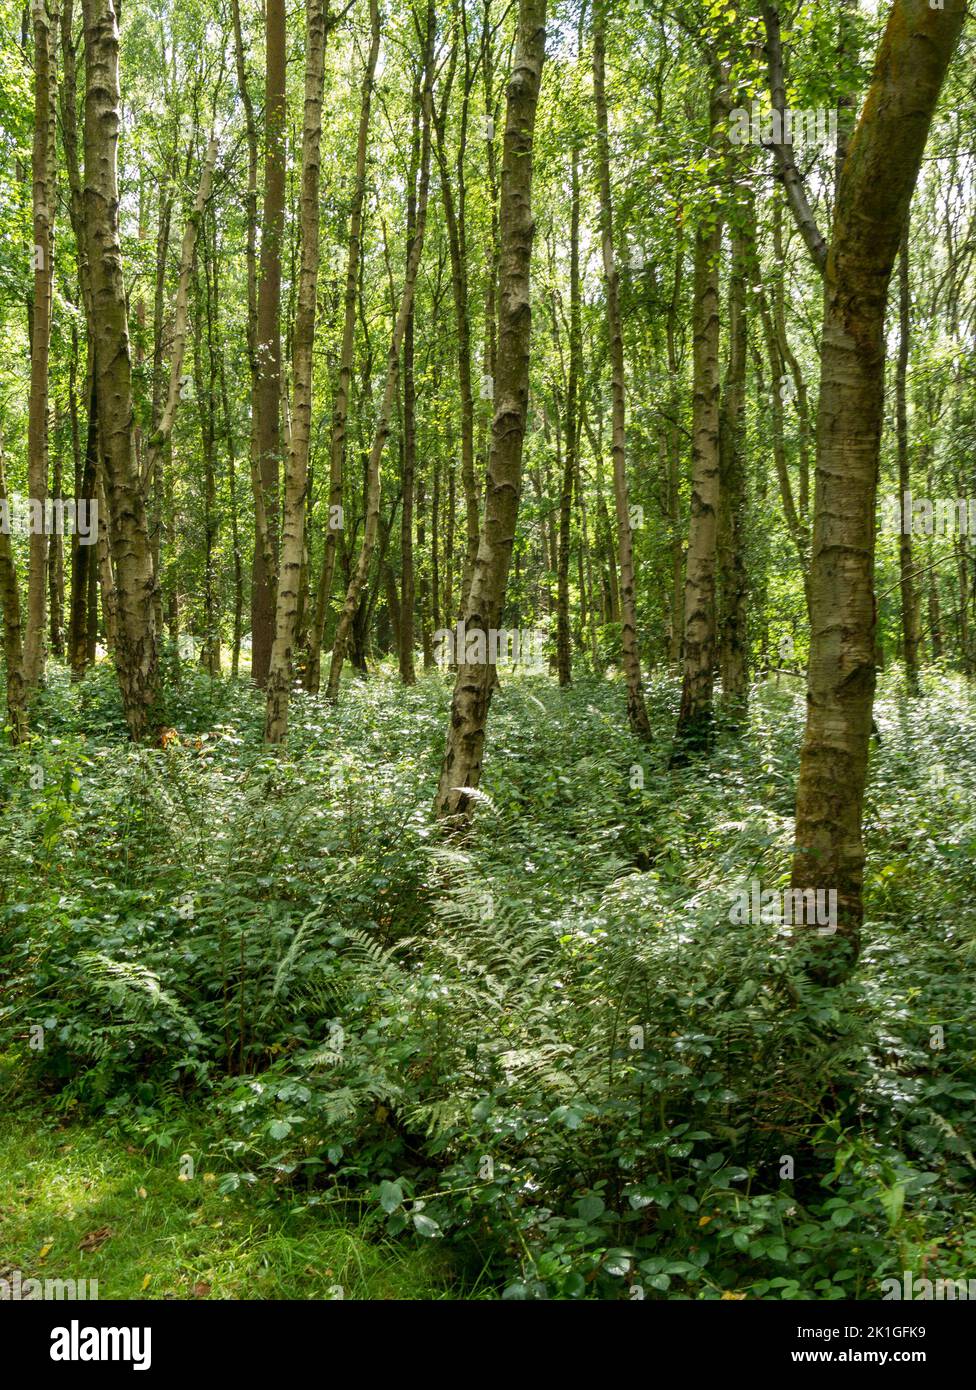 Bois de bouleau argenté (Betula pendula) dans la forêt nationale, Calke, Derbyshire, Angleterre, Royaume-Uni Banque D'Images